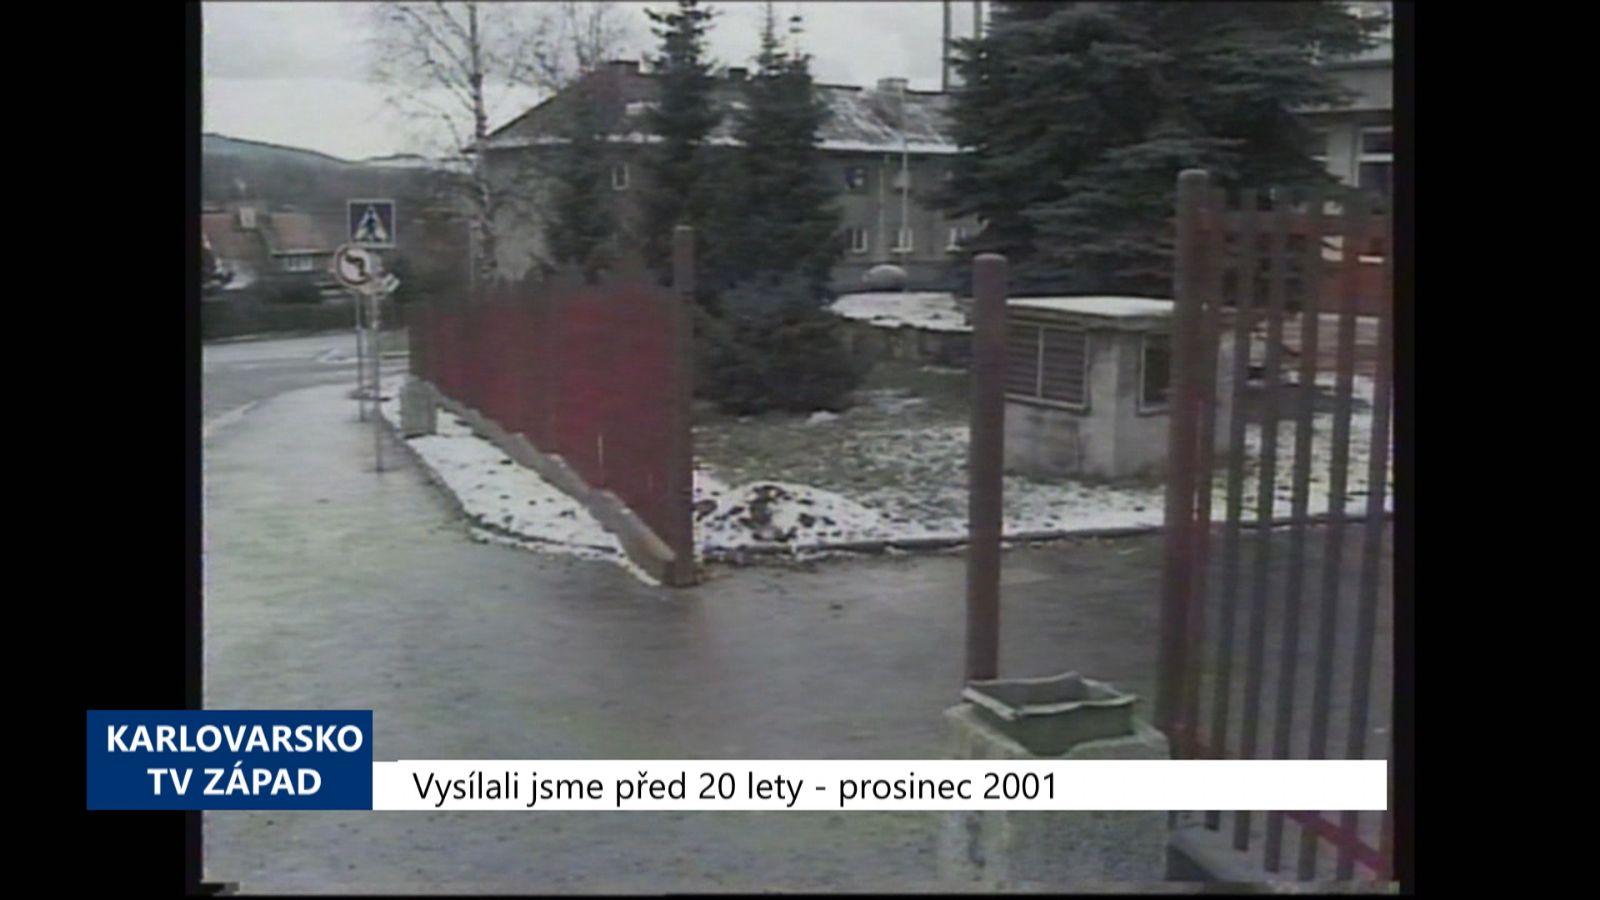 2001 – Sokolov: Objekt Alfy má zrekonstruované přízemí a nový plot (TV Západ)